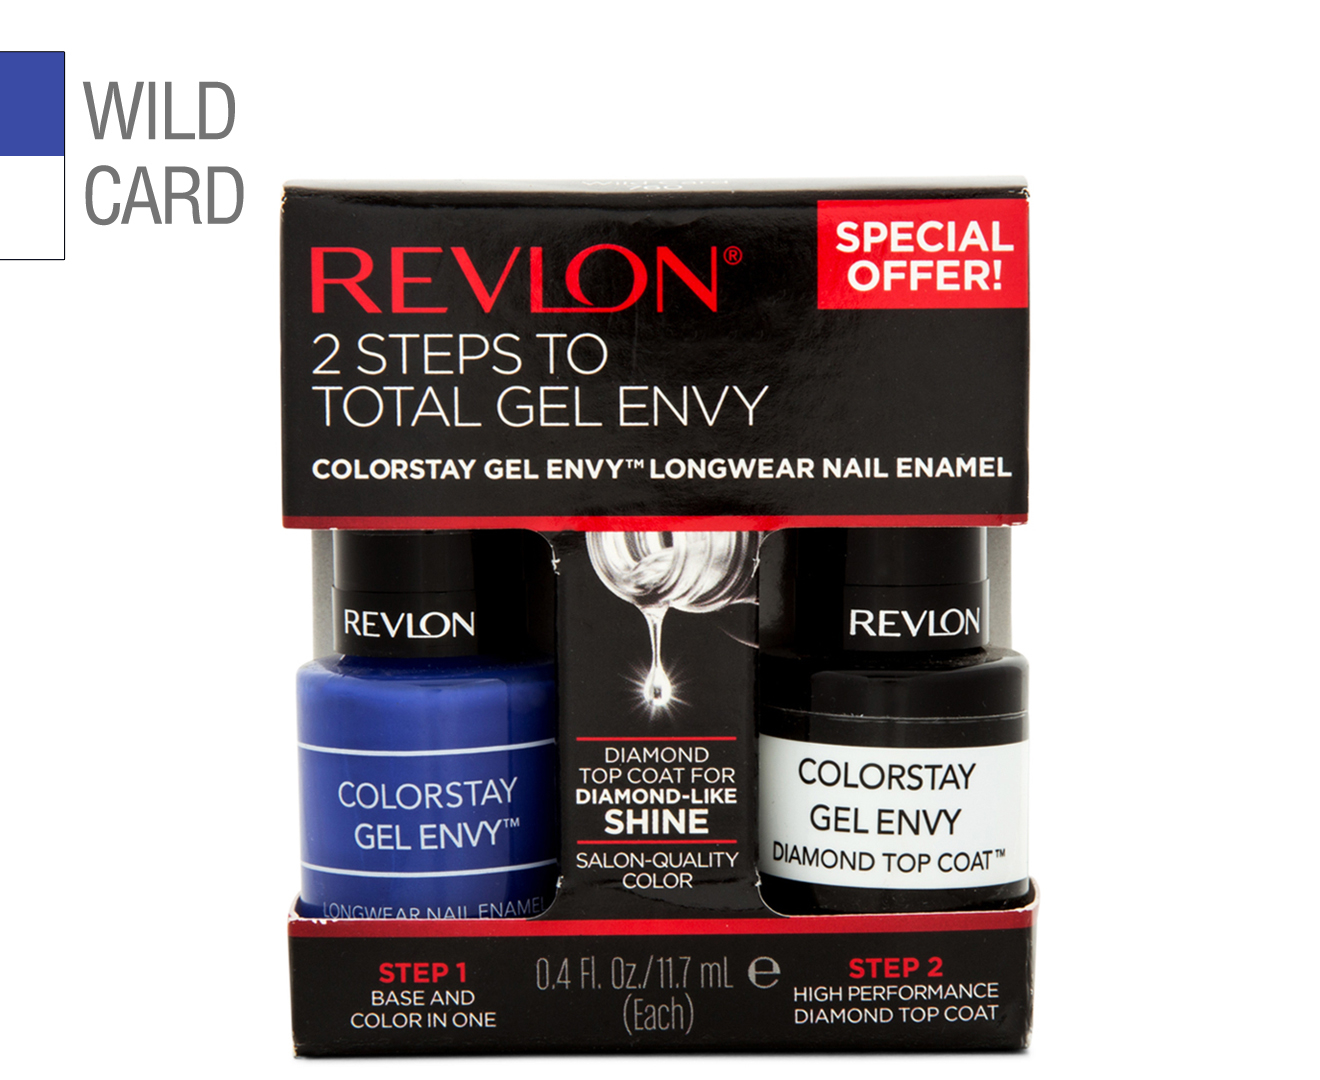 6. Revlon ColorStay Gel Envy in "Wild Card" - wide 3